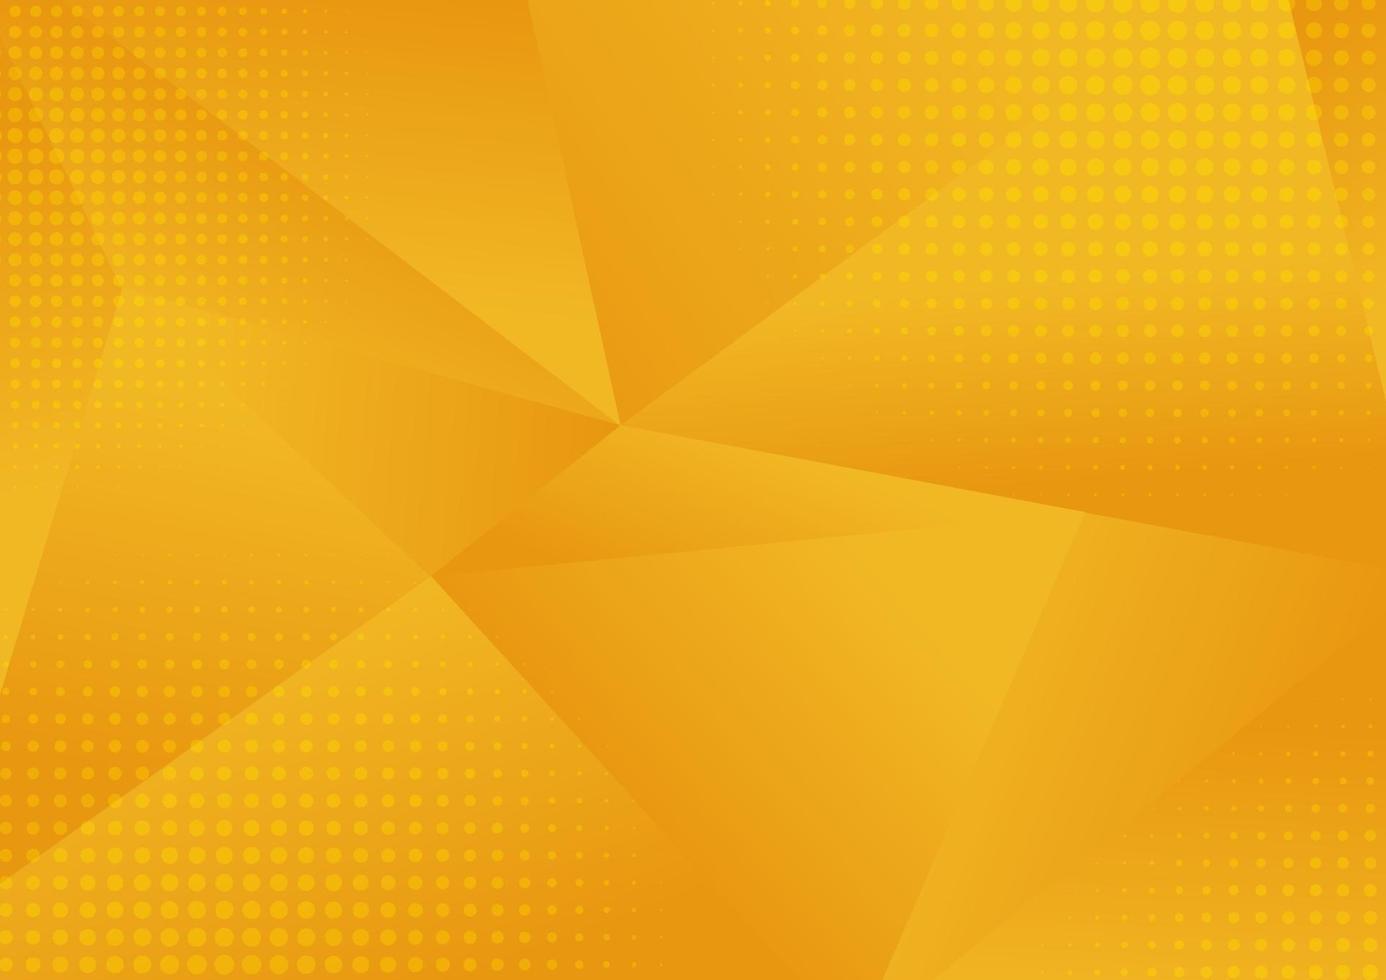 abstracte gele lage geometrische veelhoek bestaande uit driehoeken in verschillende maten en kleuren achtergrond met halftoon vector